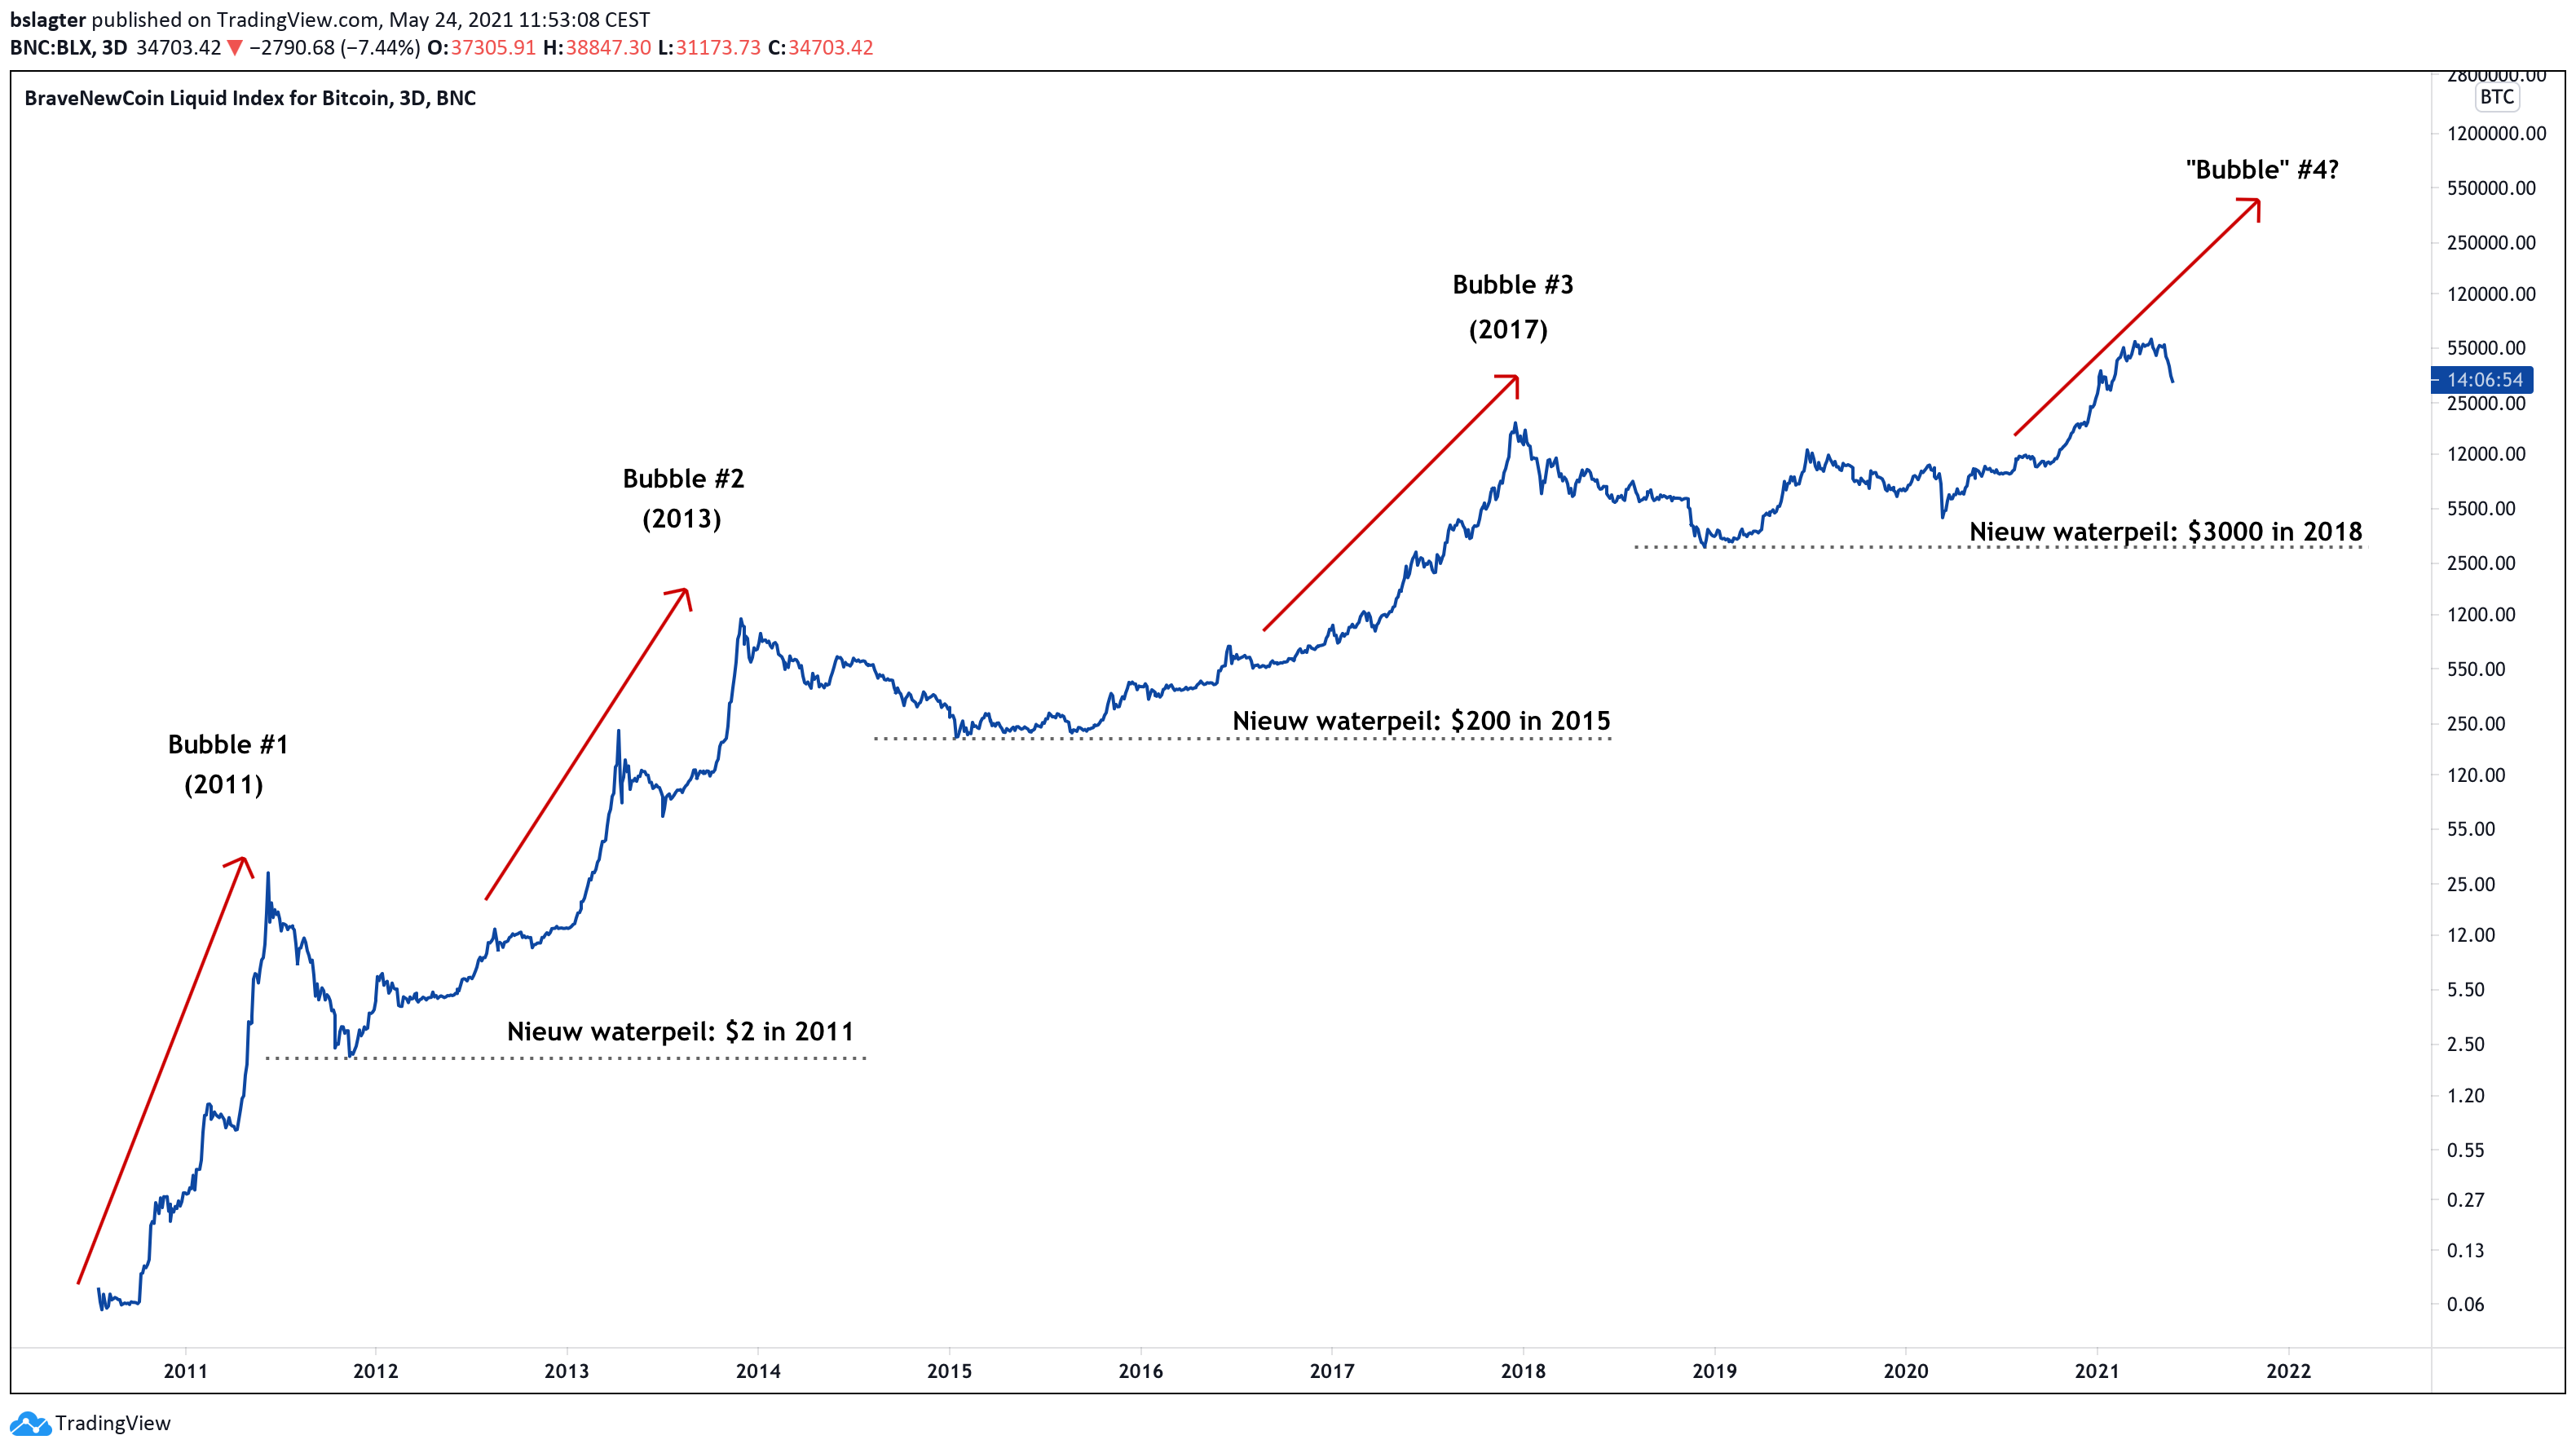 Bitcoin bubbles, bubbels, waterpeil (mei 2021)